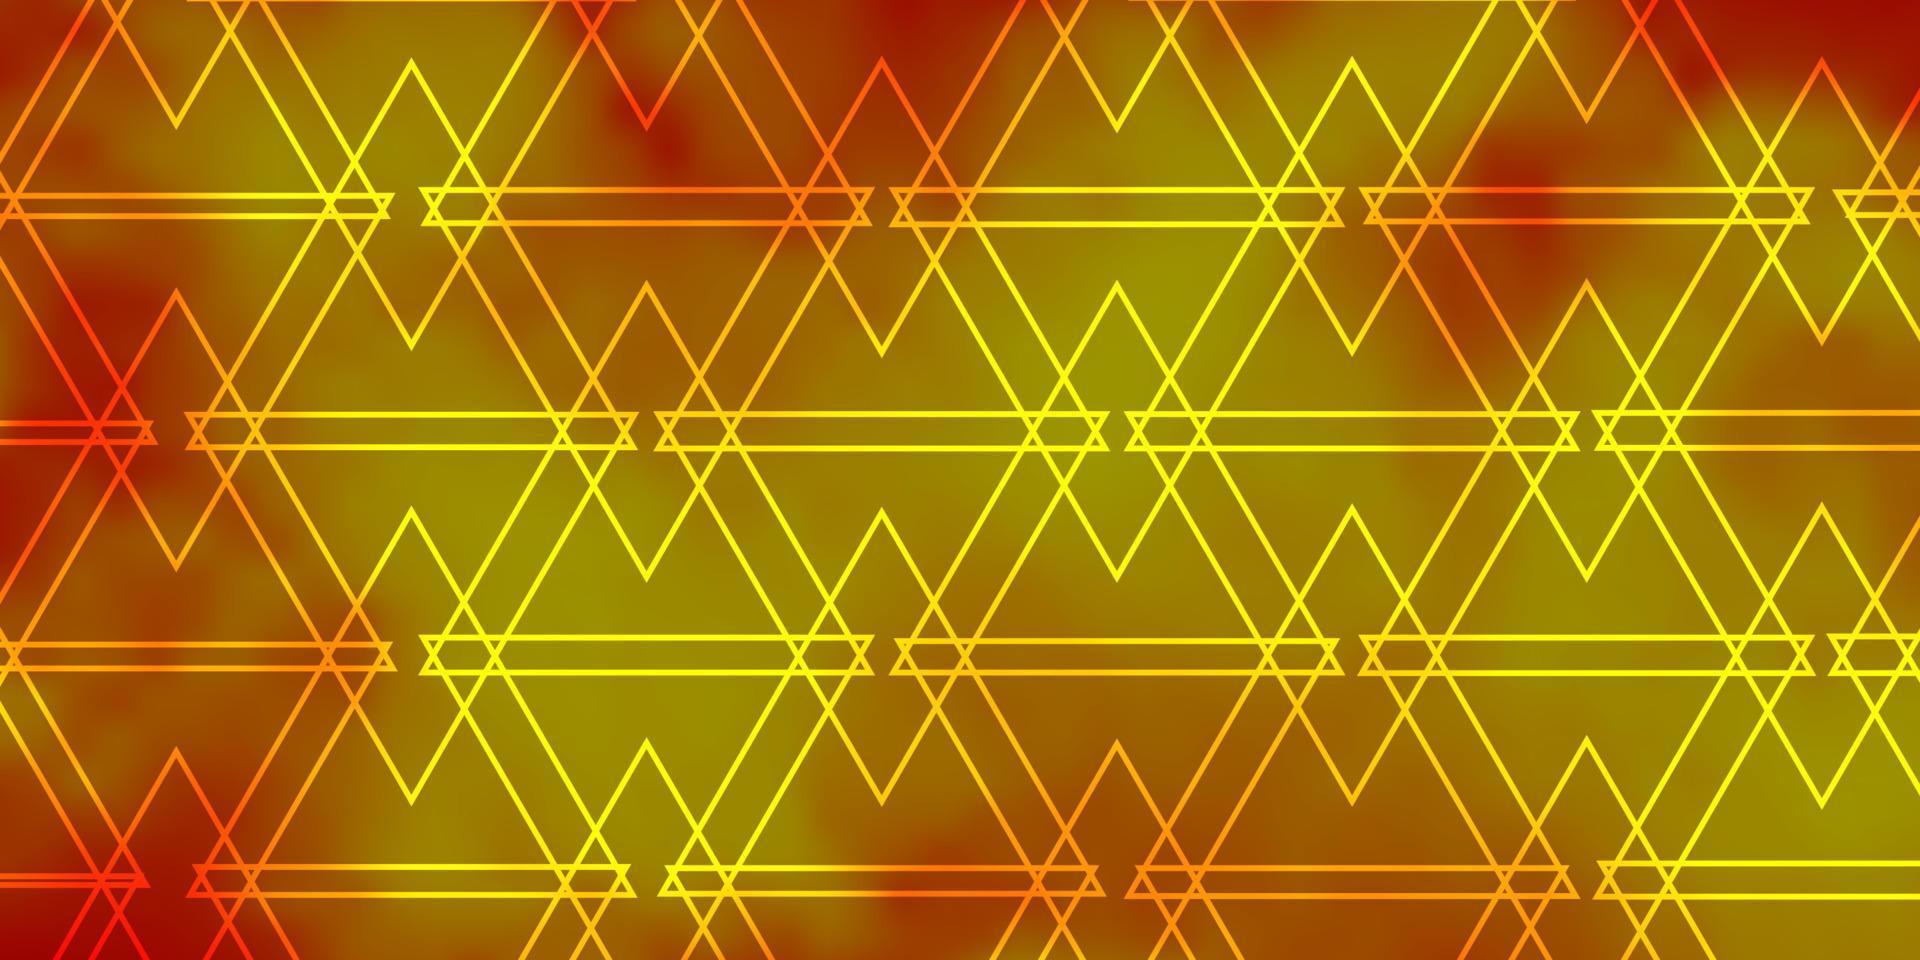 sfondo vettoriale arancione chiaro con linee, triangoli.